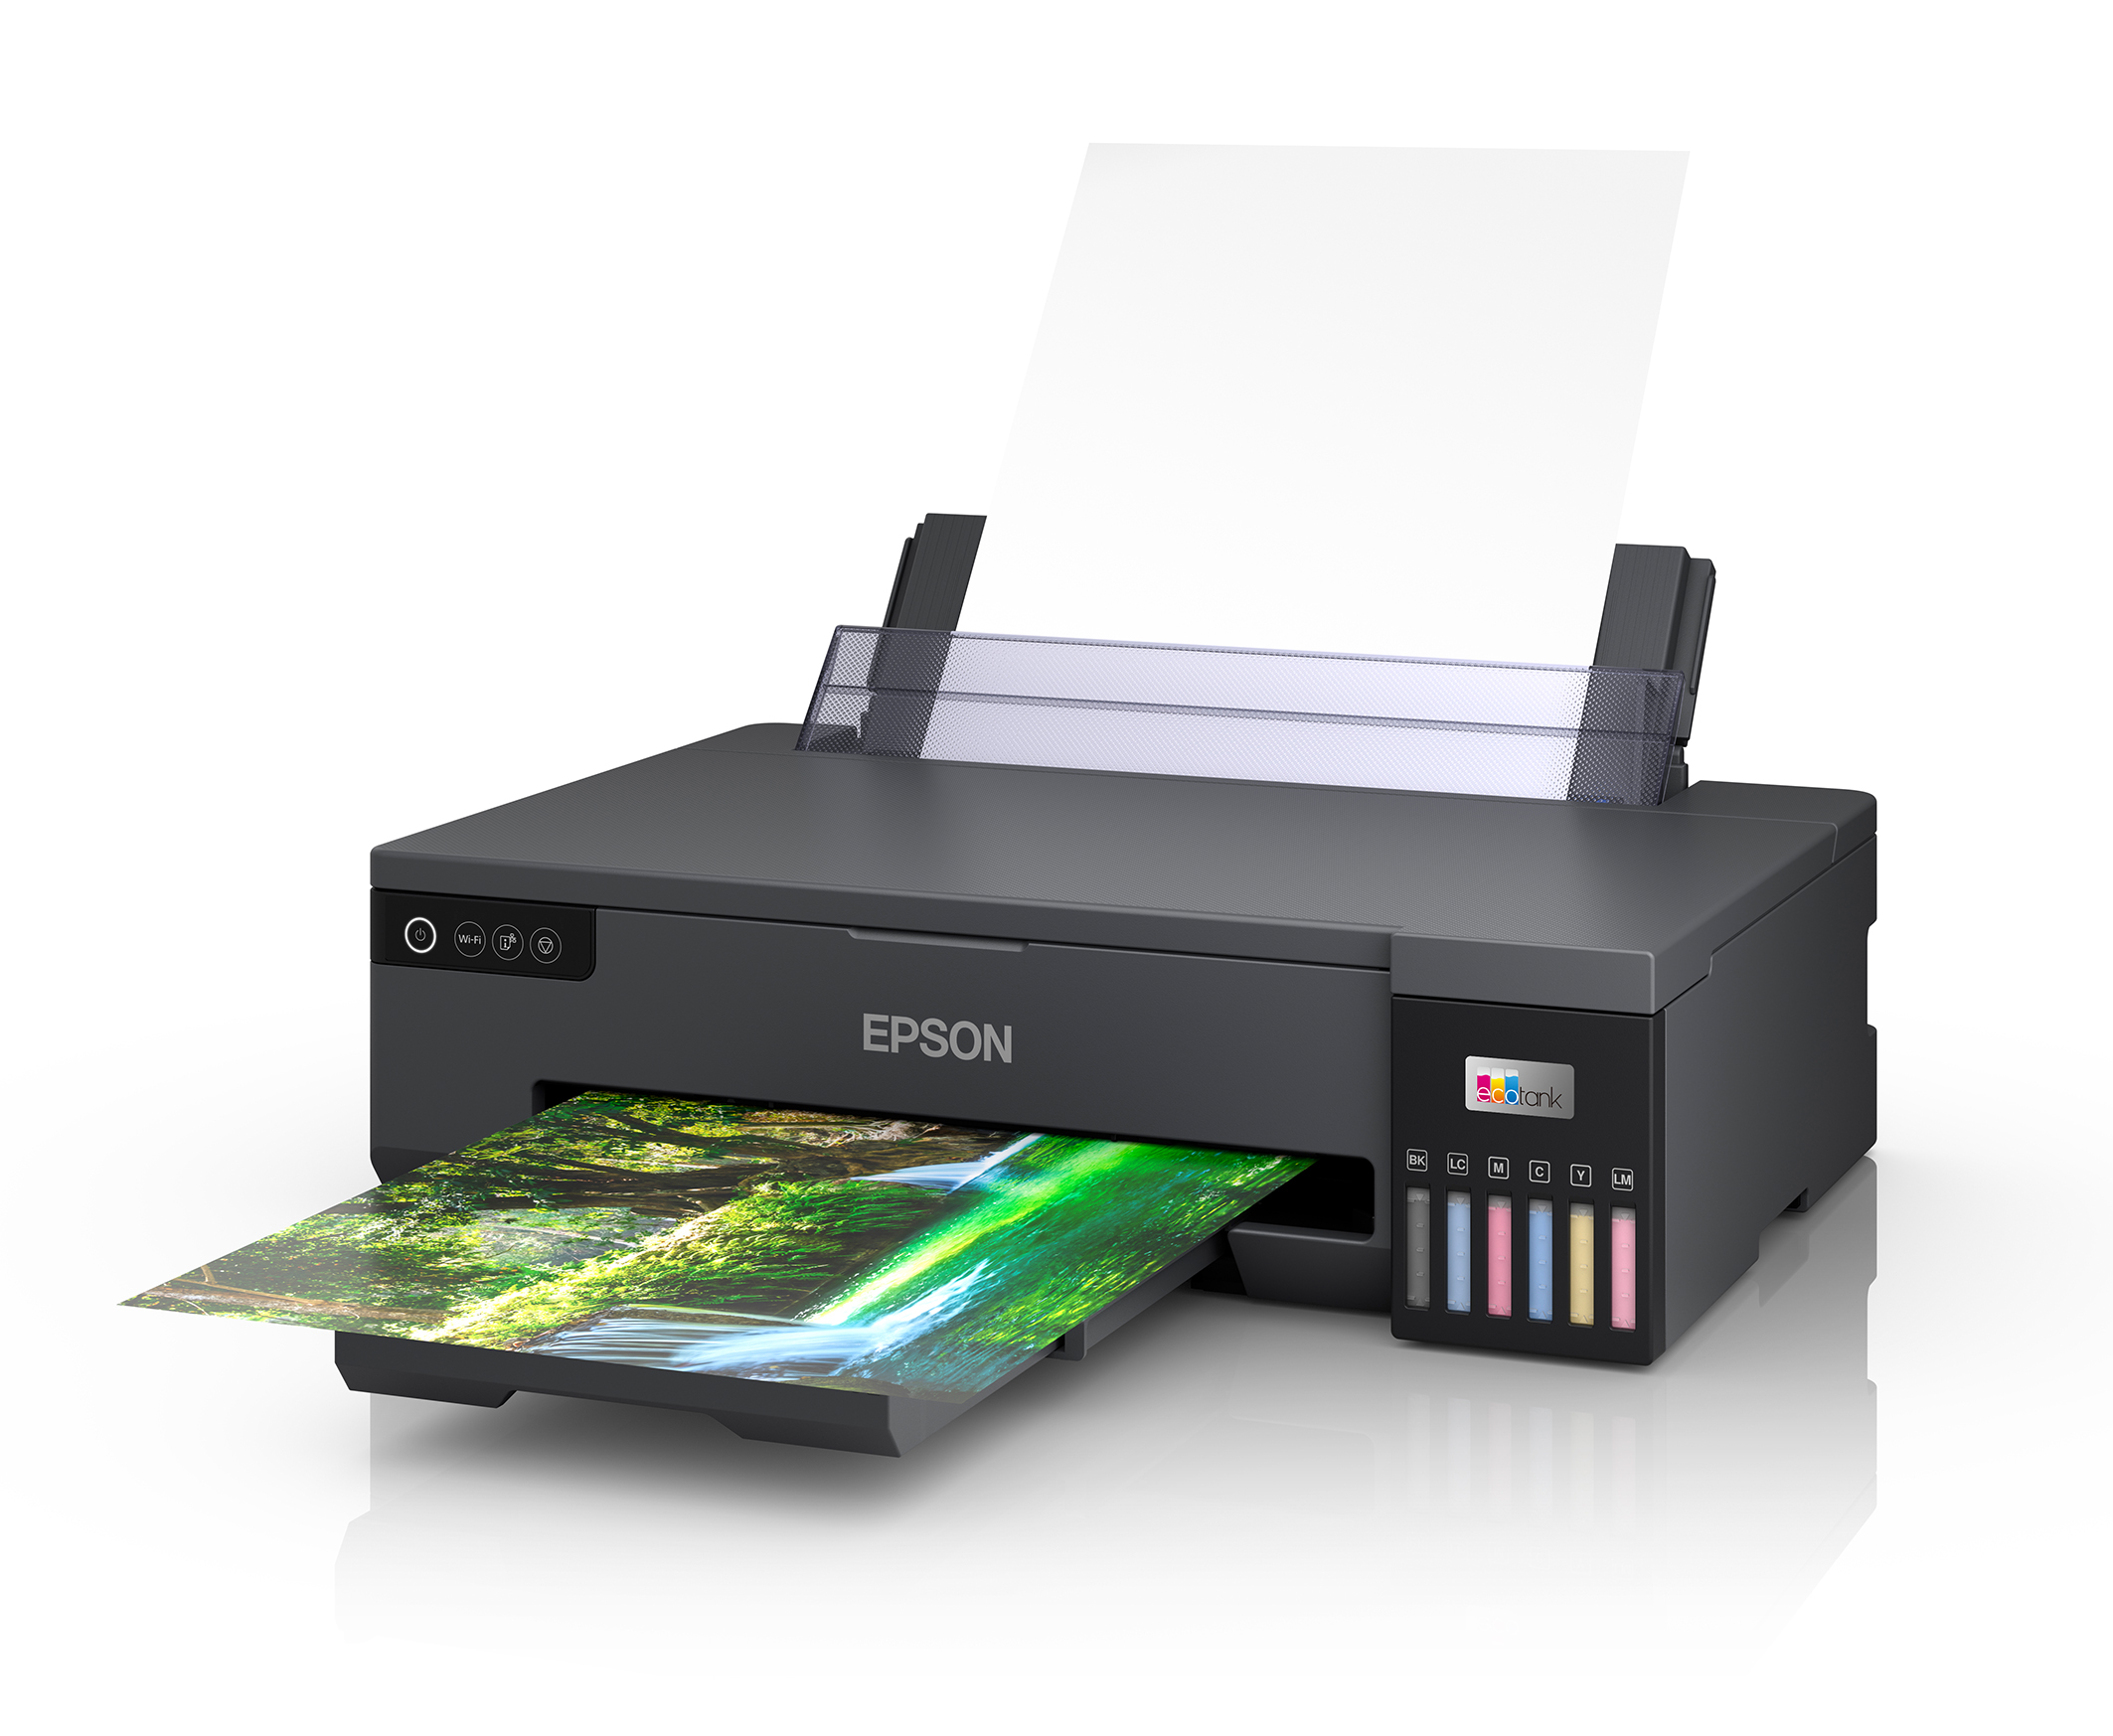 Neuer Epson EcoTank Drucker für Fotos im A3+ Format - Das FotoPortal